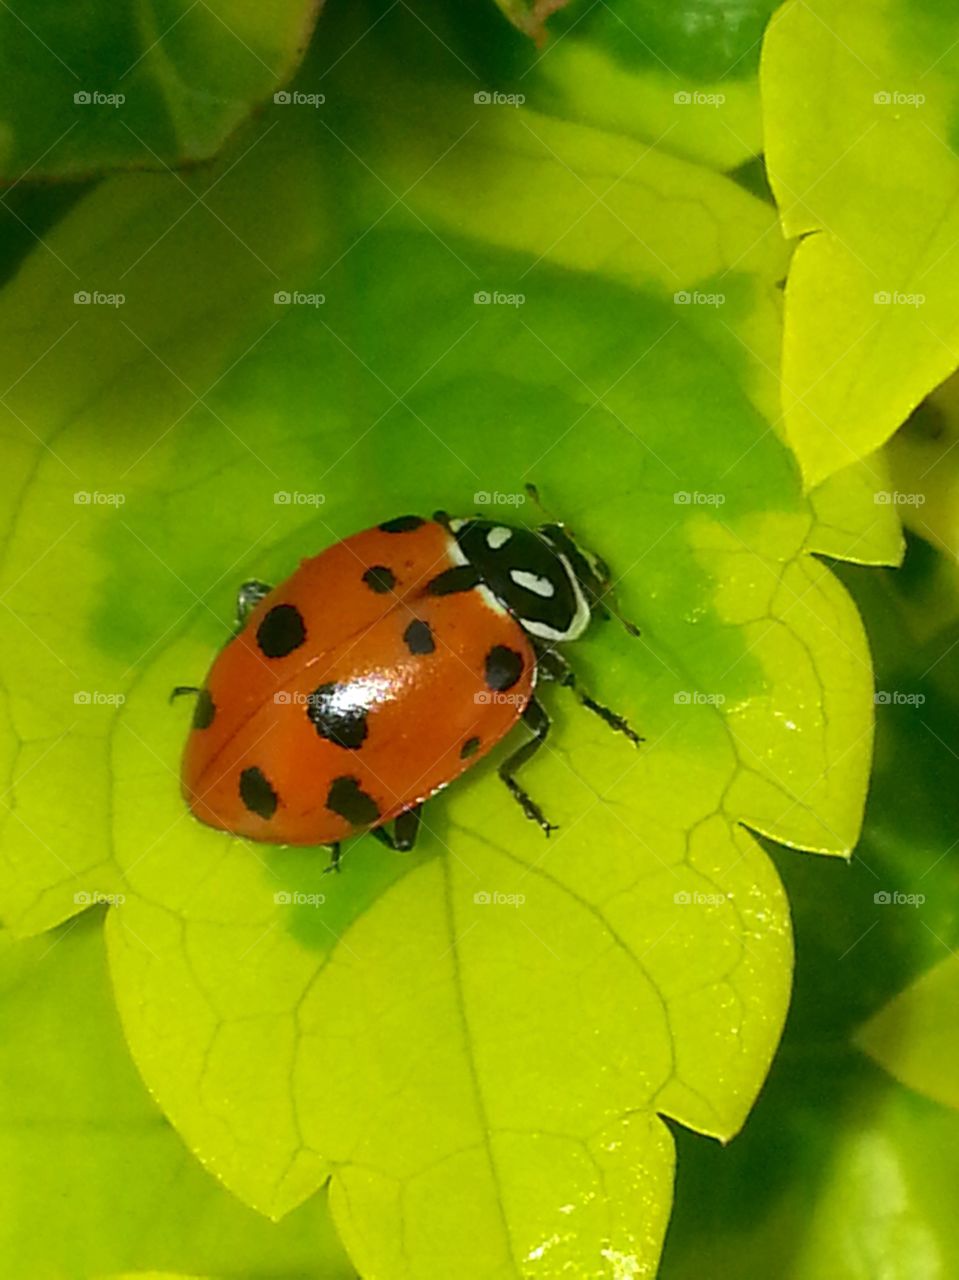 Ladybug
Ladybird 